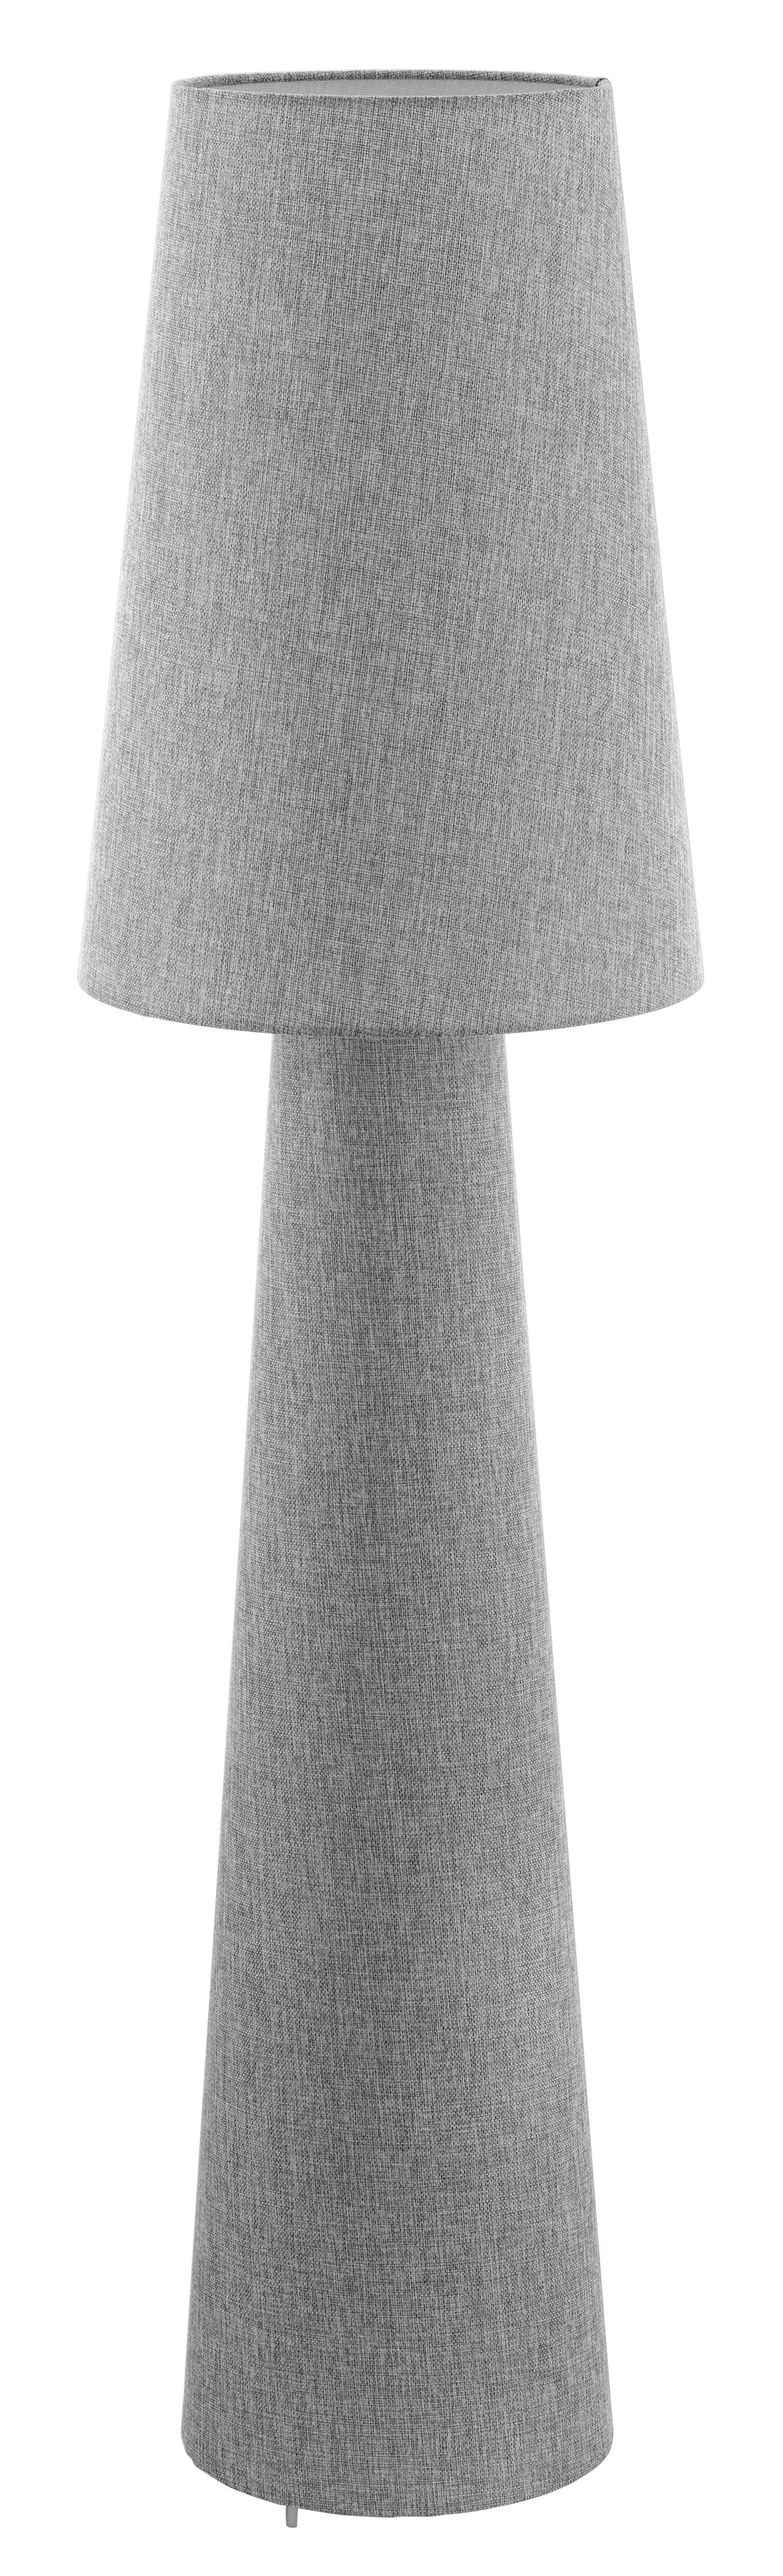 Carpara Floor lamp Gray - 97138A | EGLO